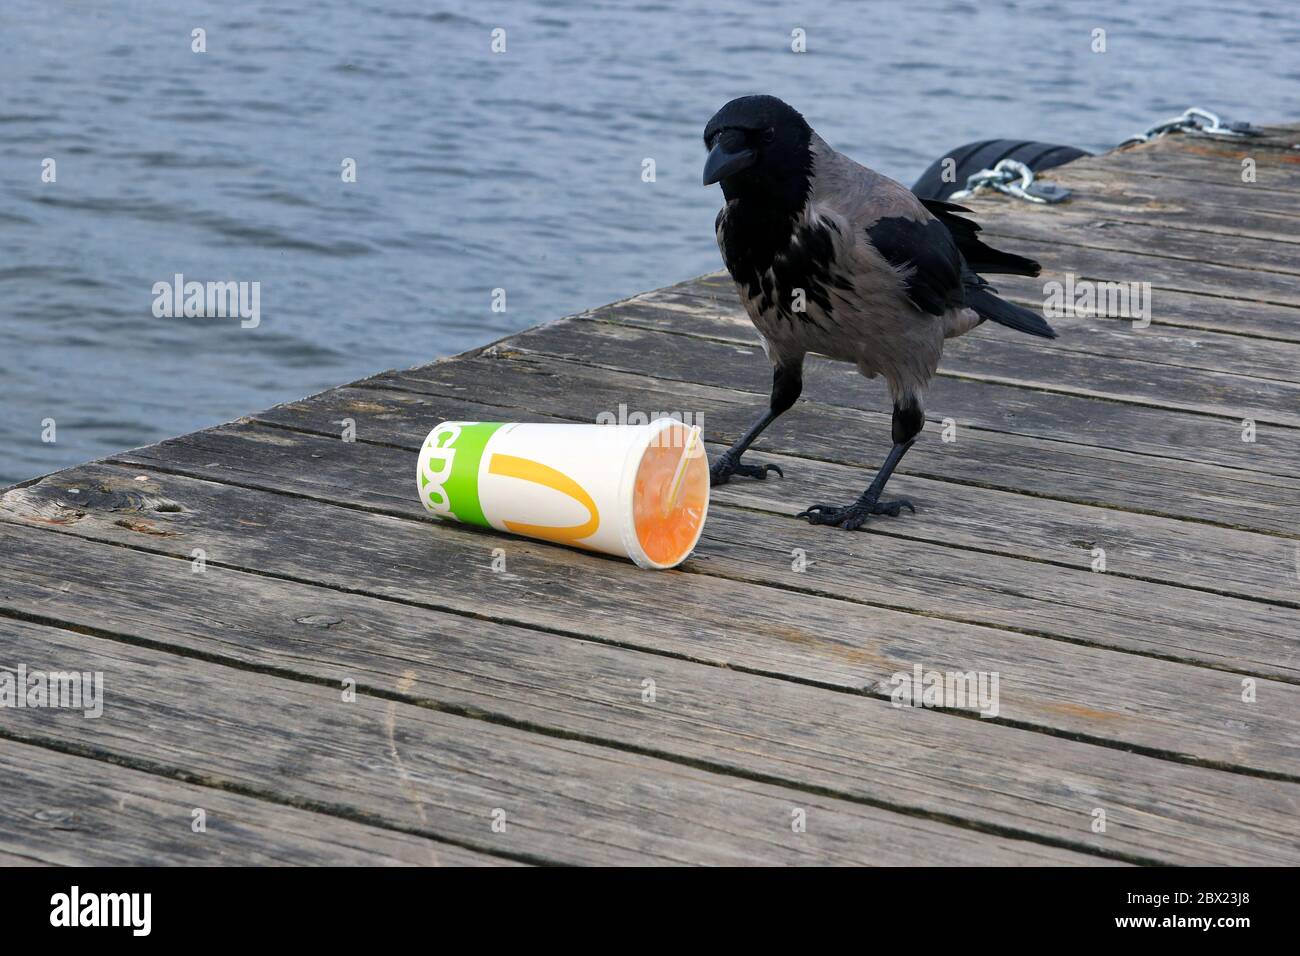 Die Kapuzenkrähe corvus cornix findet McDonalds Softdrinkbehälter mit Soda im Inneren auf einem Holzsteg weggeworfen, und der Vogel bewertet die Situation. Stockfoto